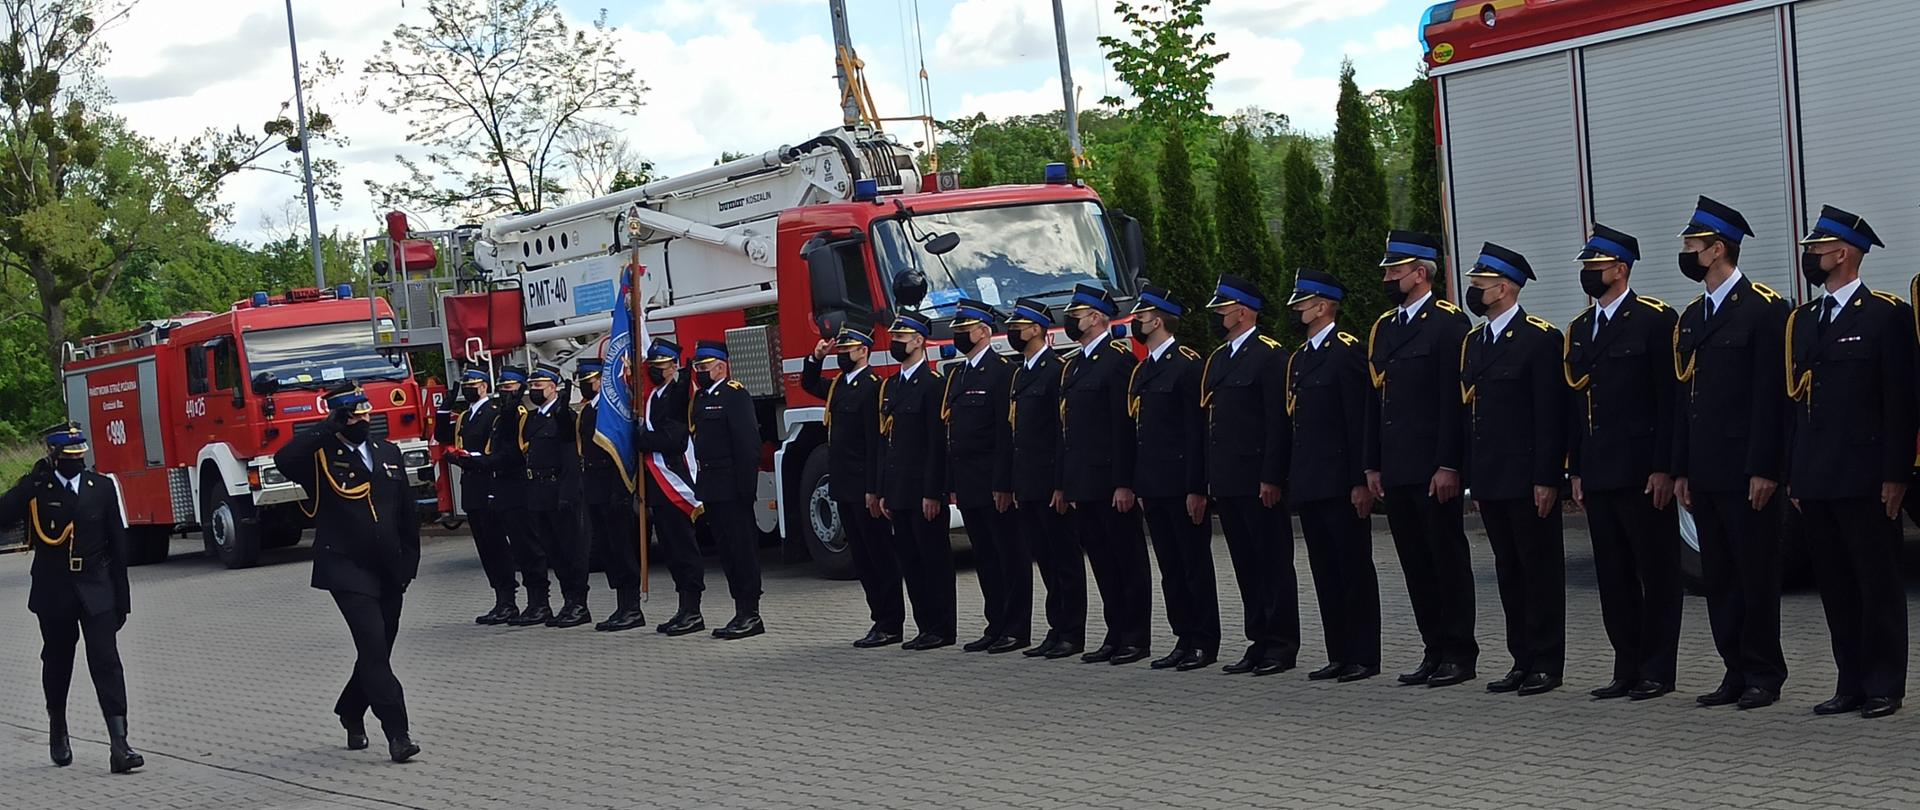 Przed pocztem flagowym, pocztem sztandarowym oraz szeregiem strażaków w mundurach galowych przechodzi przedstawicielem Mazowieckiego Komendanta Wojewódzkiego oraz dowódca uroczystości salutują. W tle widać samochody pożarnicze.